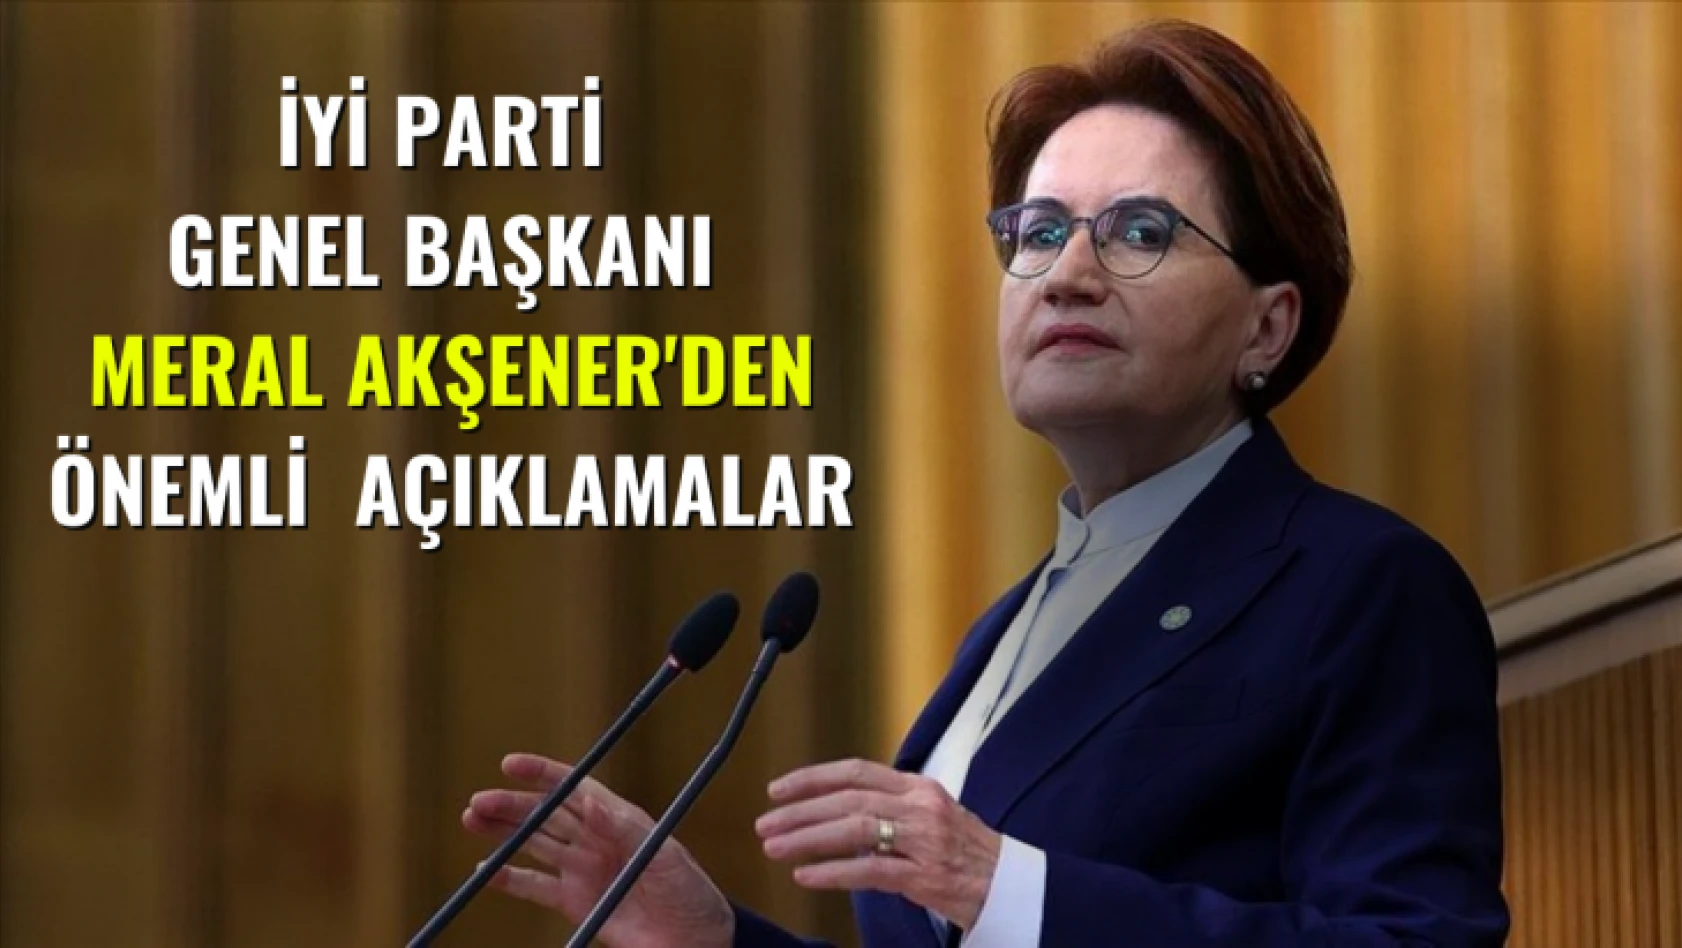 İyi Parti  Genel Başkanı  Meral Akşener'den Önemli  Açıklamalar